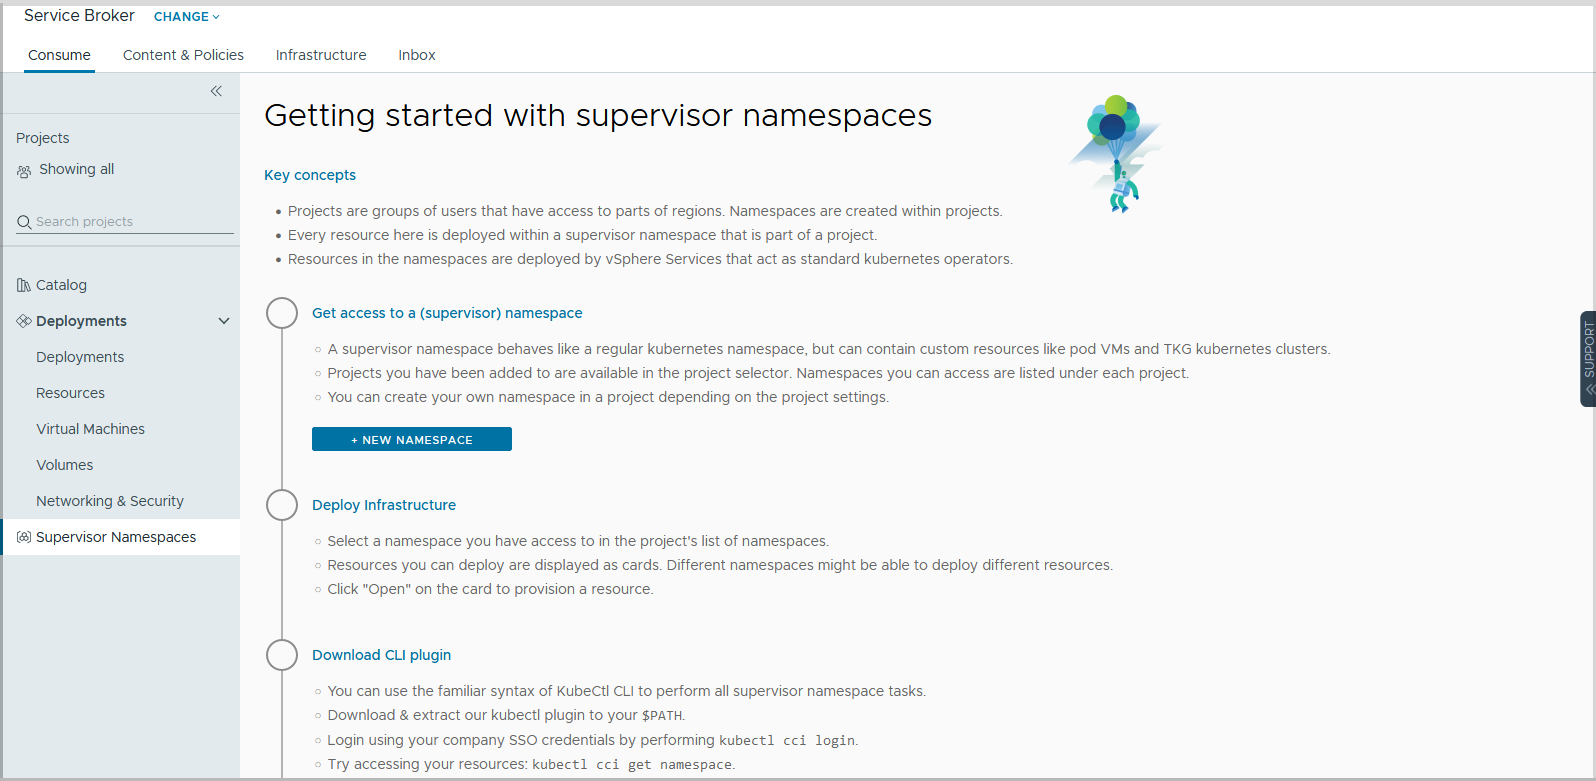 Klicken Sie auf neue Namespaces, um einen Supervisor-Namespace hinzuzufügen.